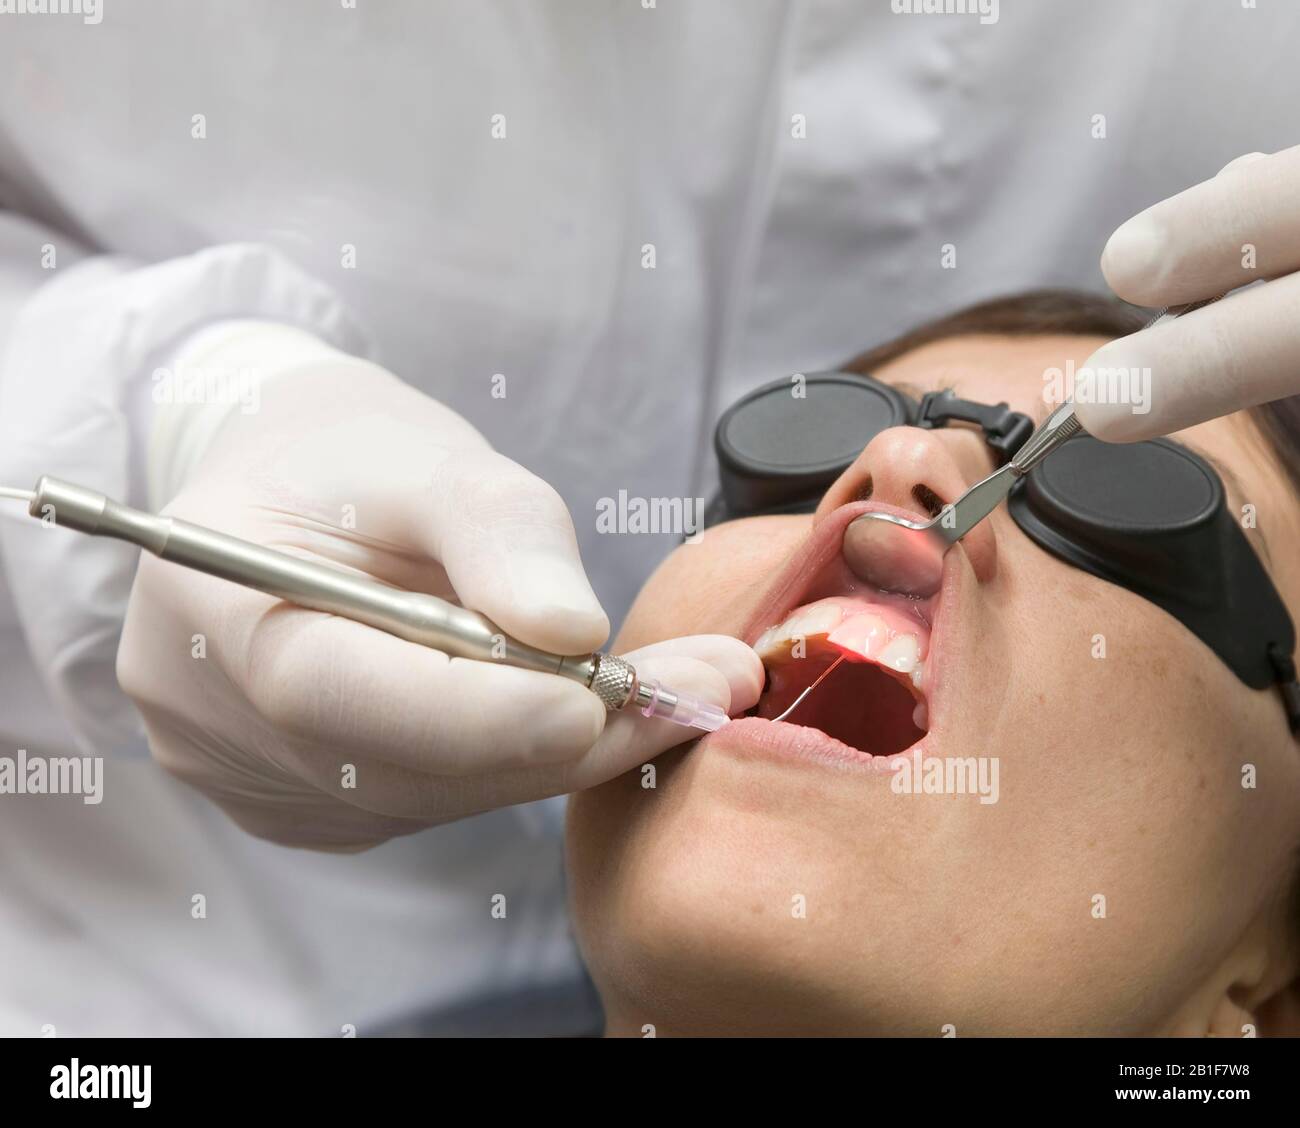 Soins dentaires avec laser, technologie laser, Allemagne Banque D'Images